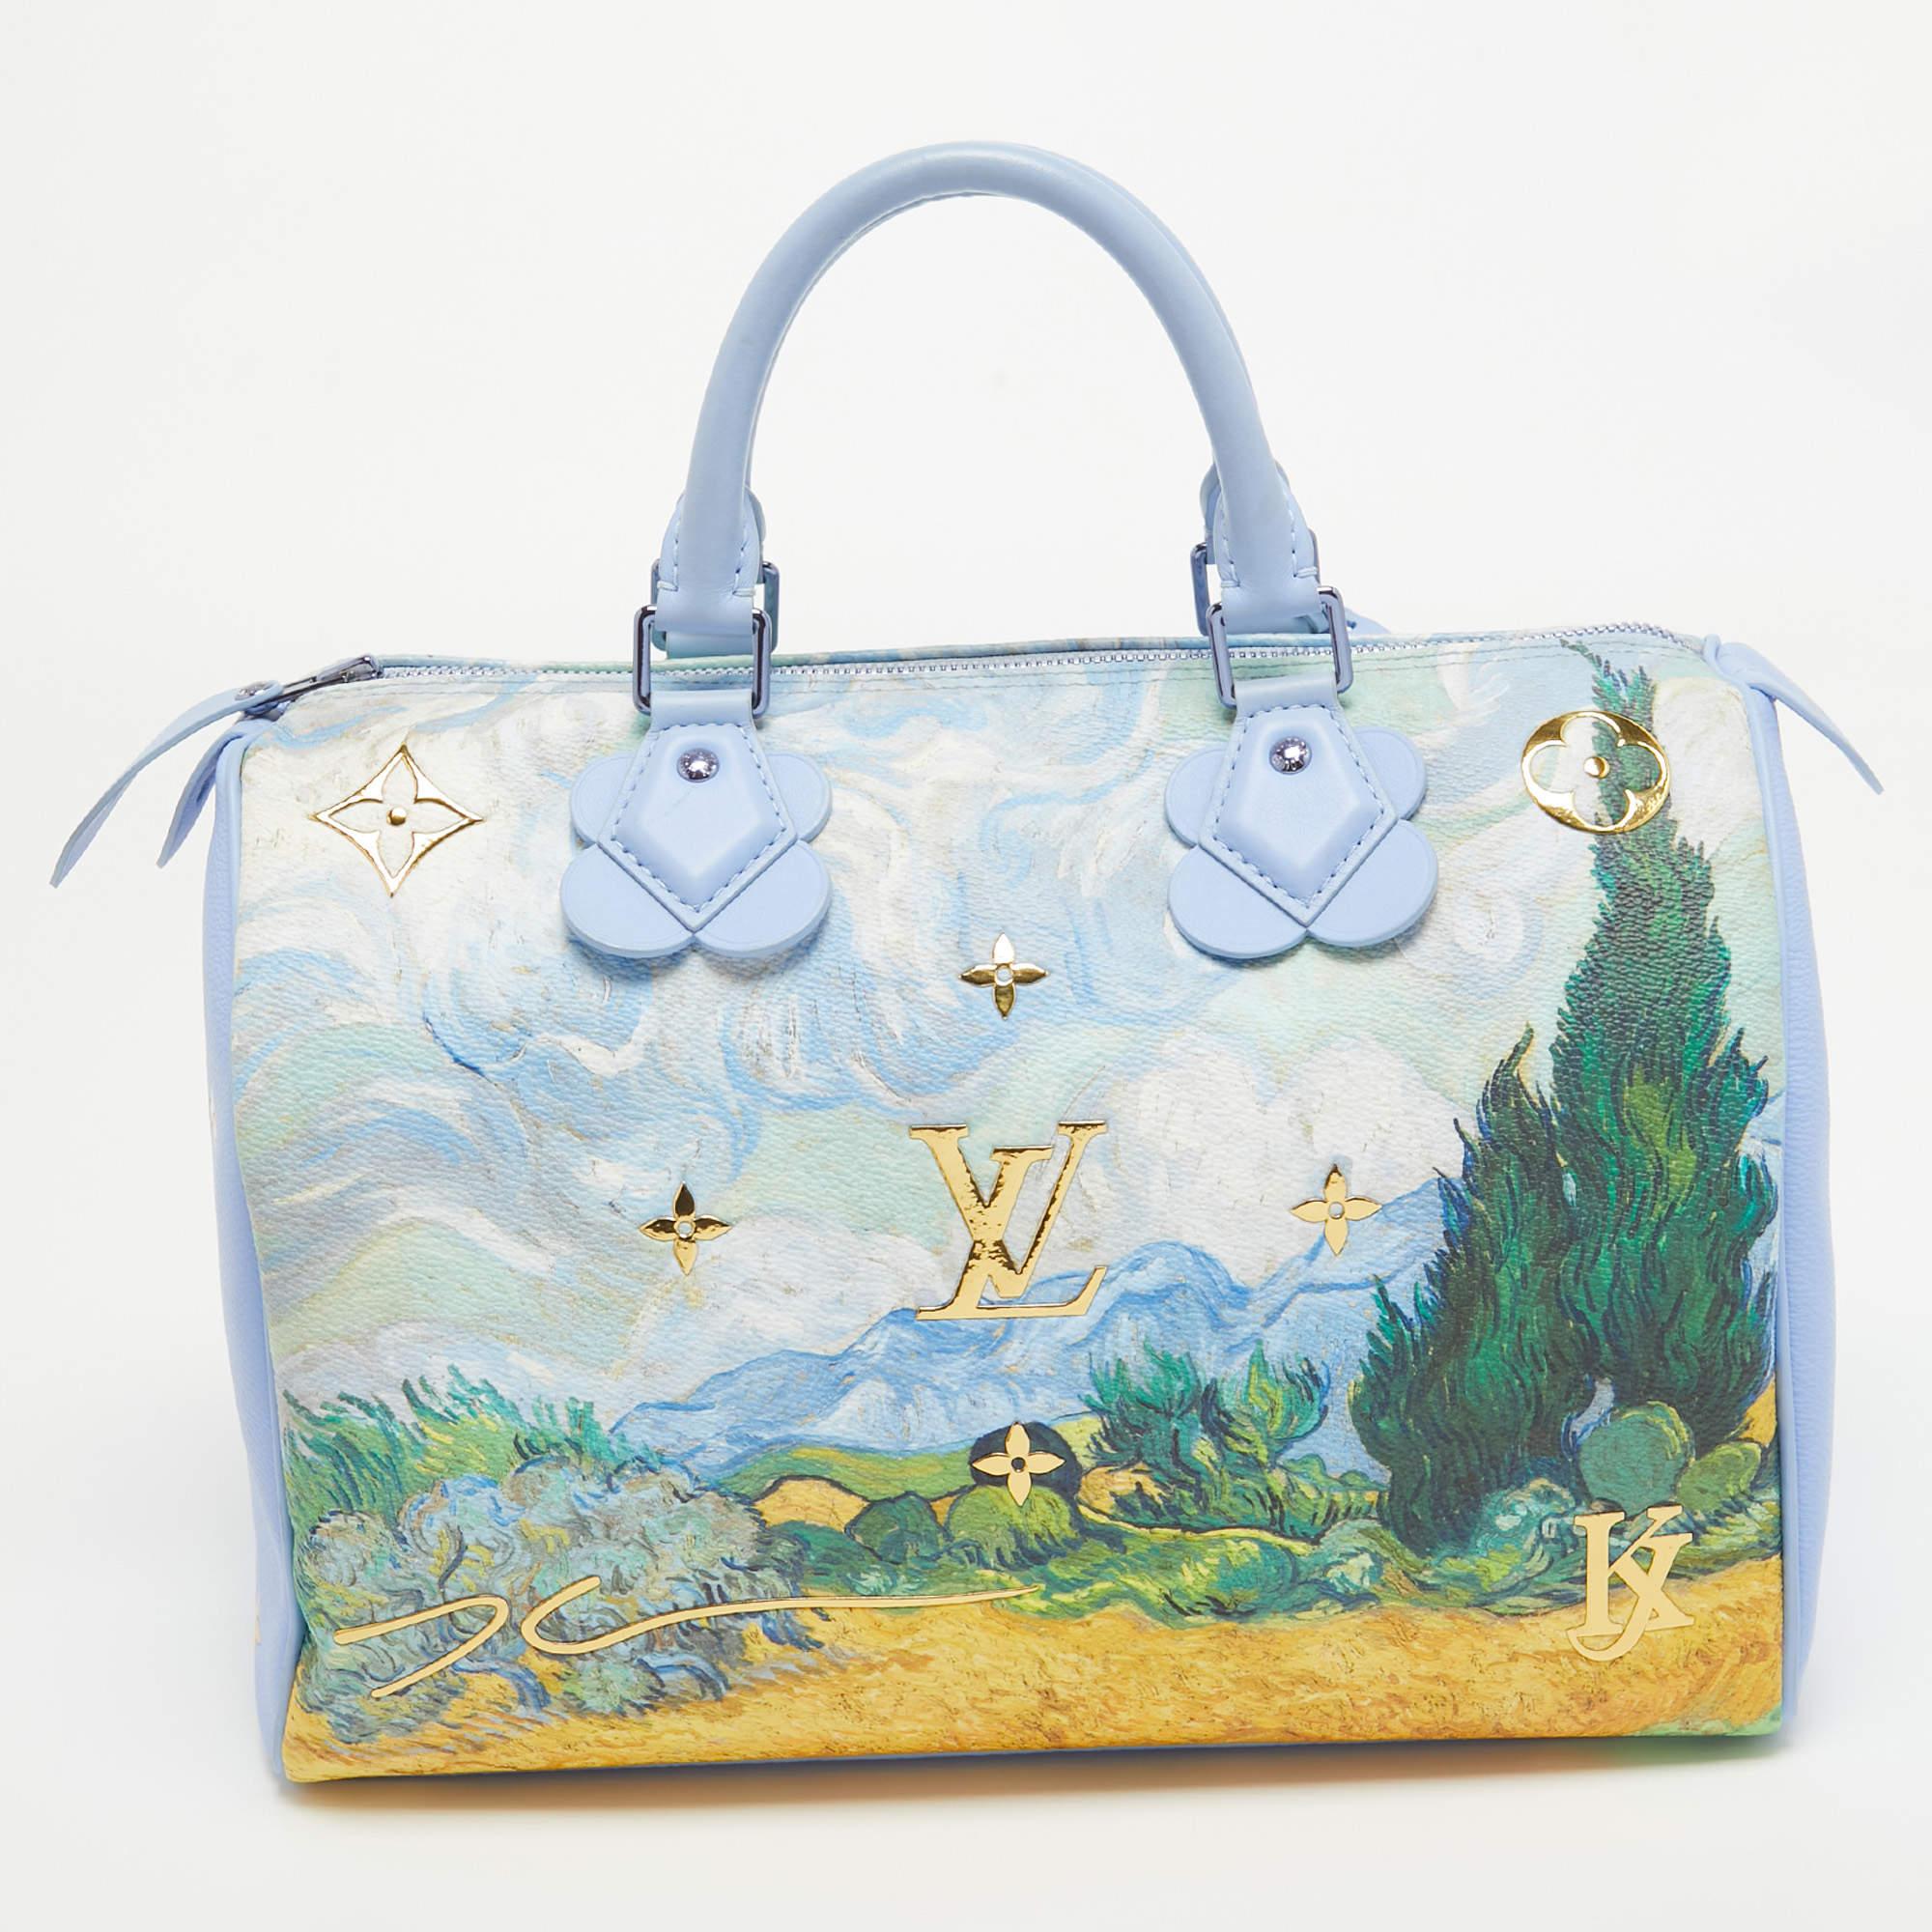 Le sac Louis Vuitton Masters Van Gogh Speedy 30 est un chef-d'œuvre d'artisanat et d'art. Ce sac à main exquis associe harmonieusement la silhouette emblématique de Louis Vuitton, le Speedy, à l'œuvre d'art intemporelle de Vincent Van Gogh.